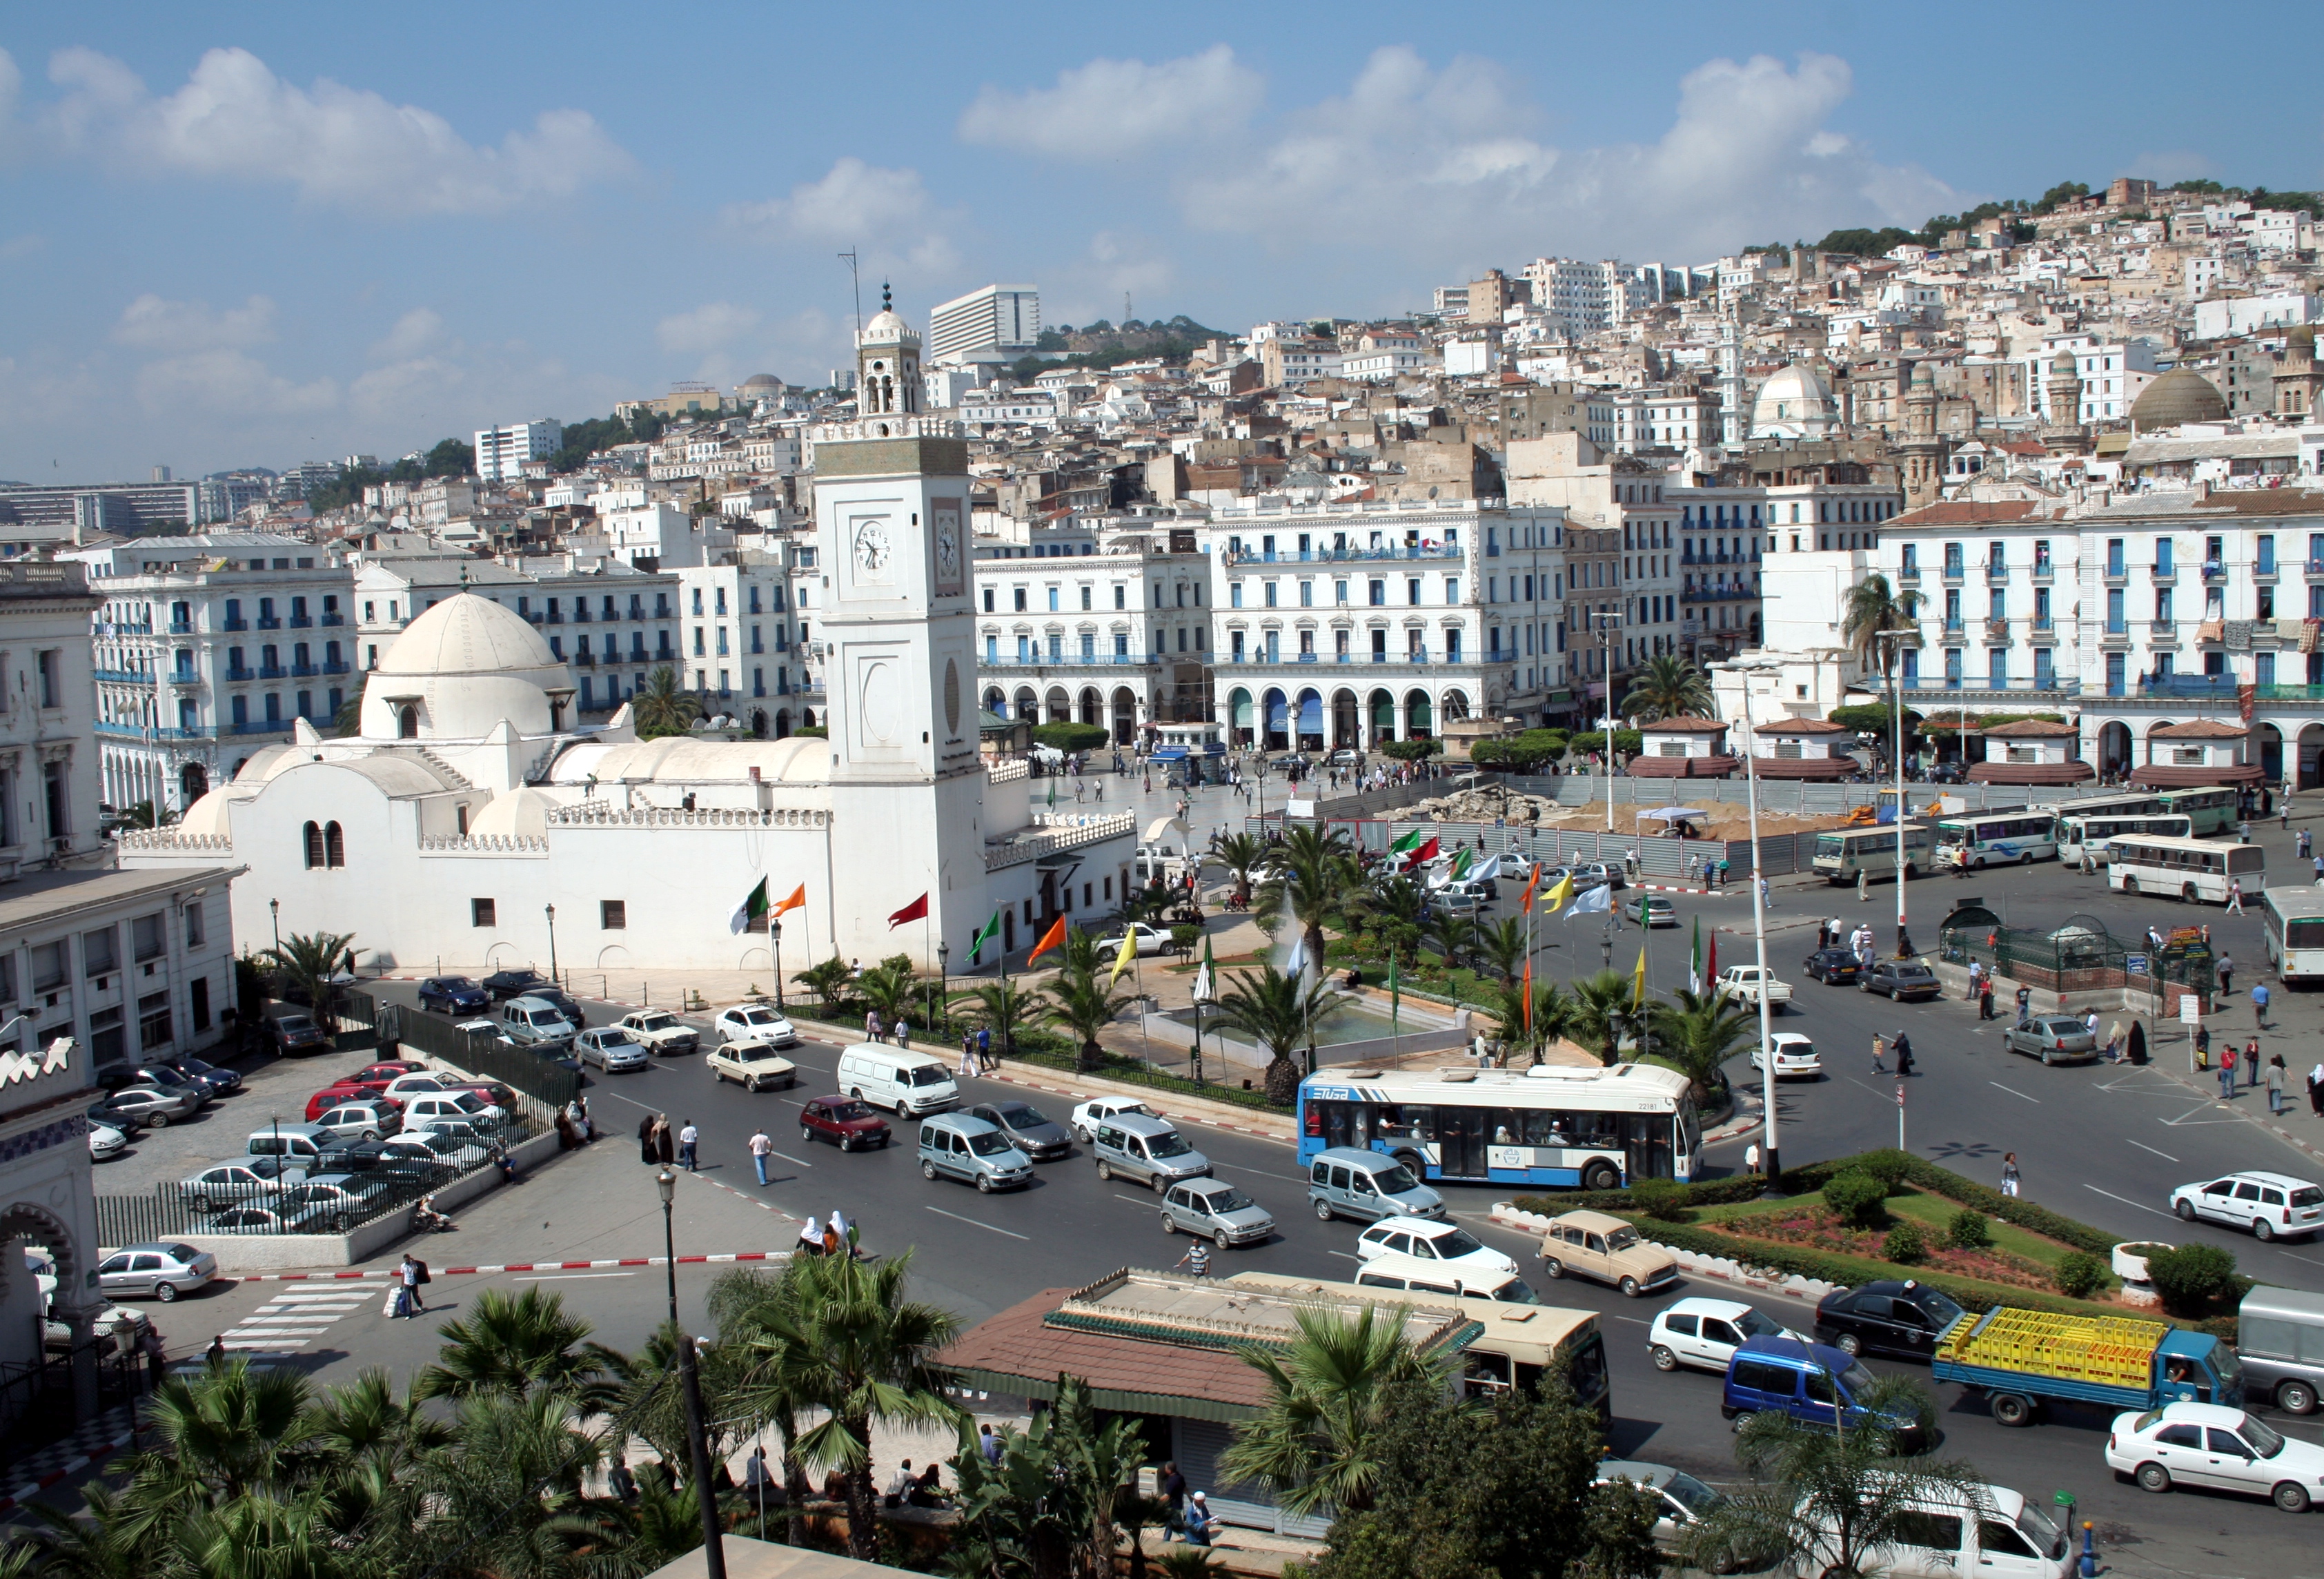  الجزائر تستضيف الندوة الوزارية حول المالية والاستثمار لدول خمسة زائد خمسة